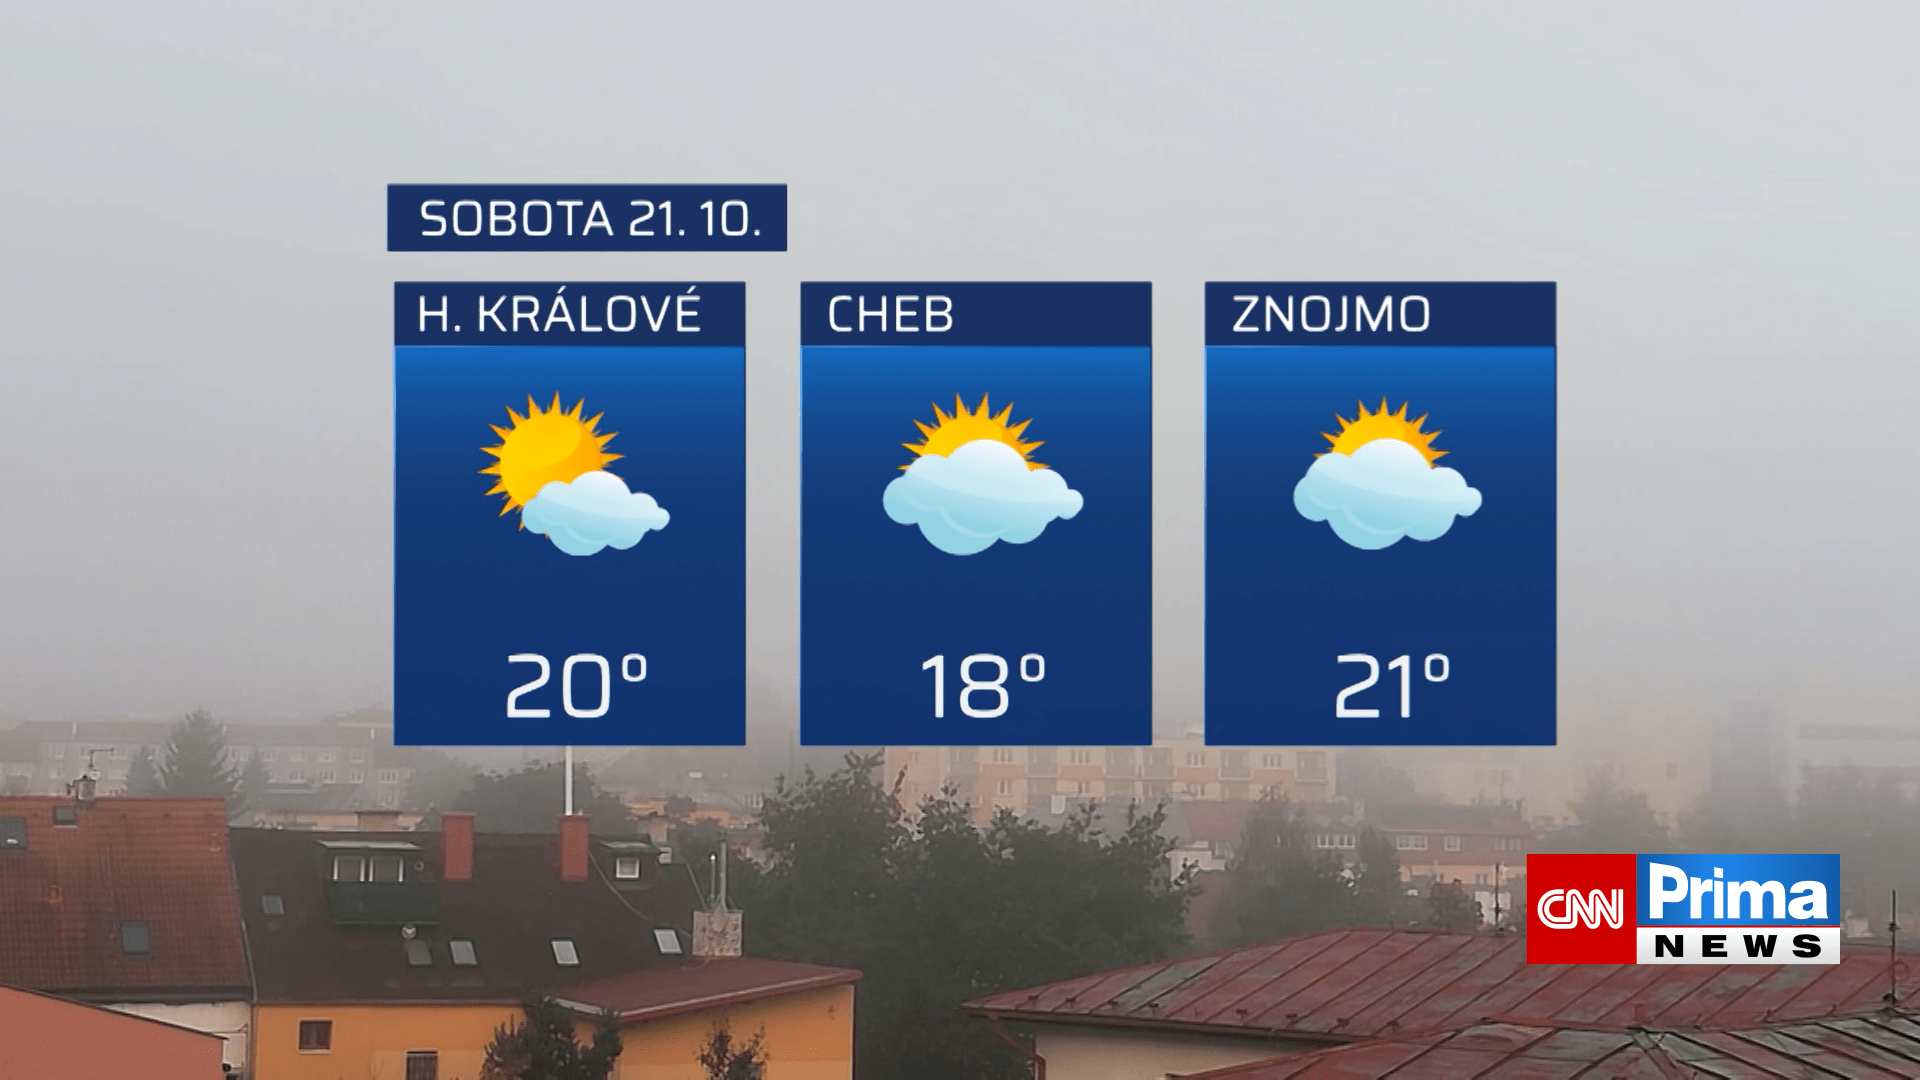 Předpověď počasí na 21. října (Hradec Králové, Cheb, Znojmo)